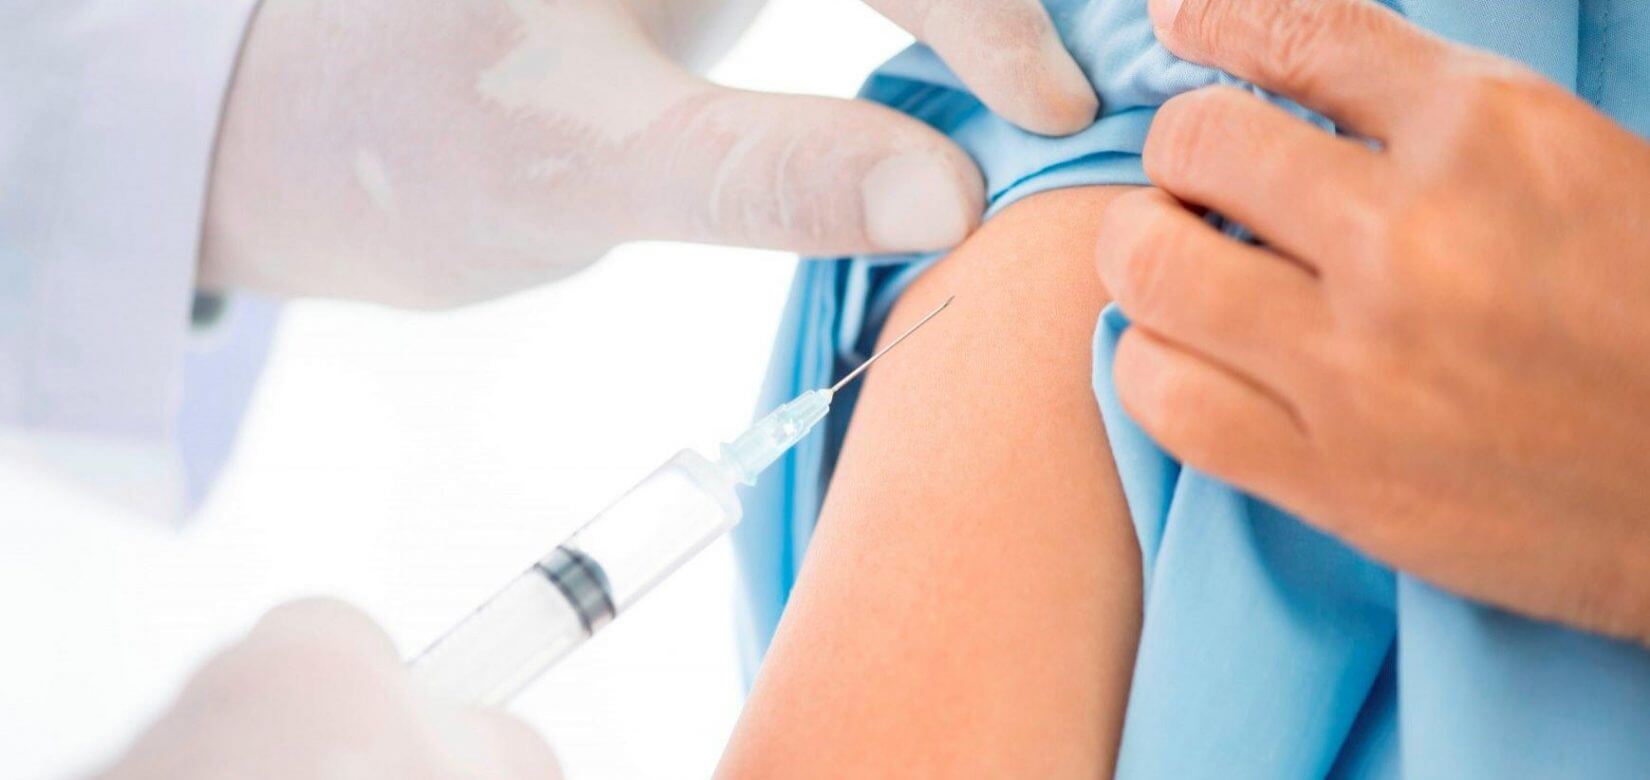 Παπαευαγγέλου: Πιθανοί οι εμβολιασμοί παιδιών κατά του κορονοϊού μέσα στο επόμενο εξάμηνο